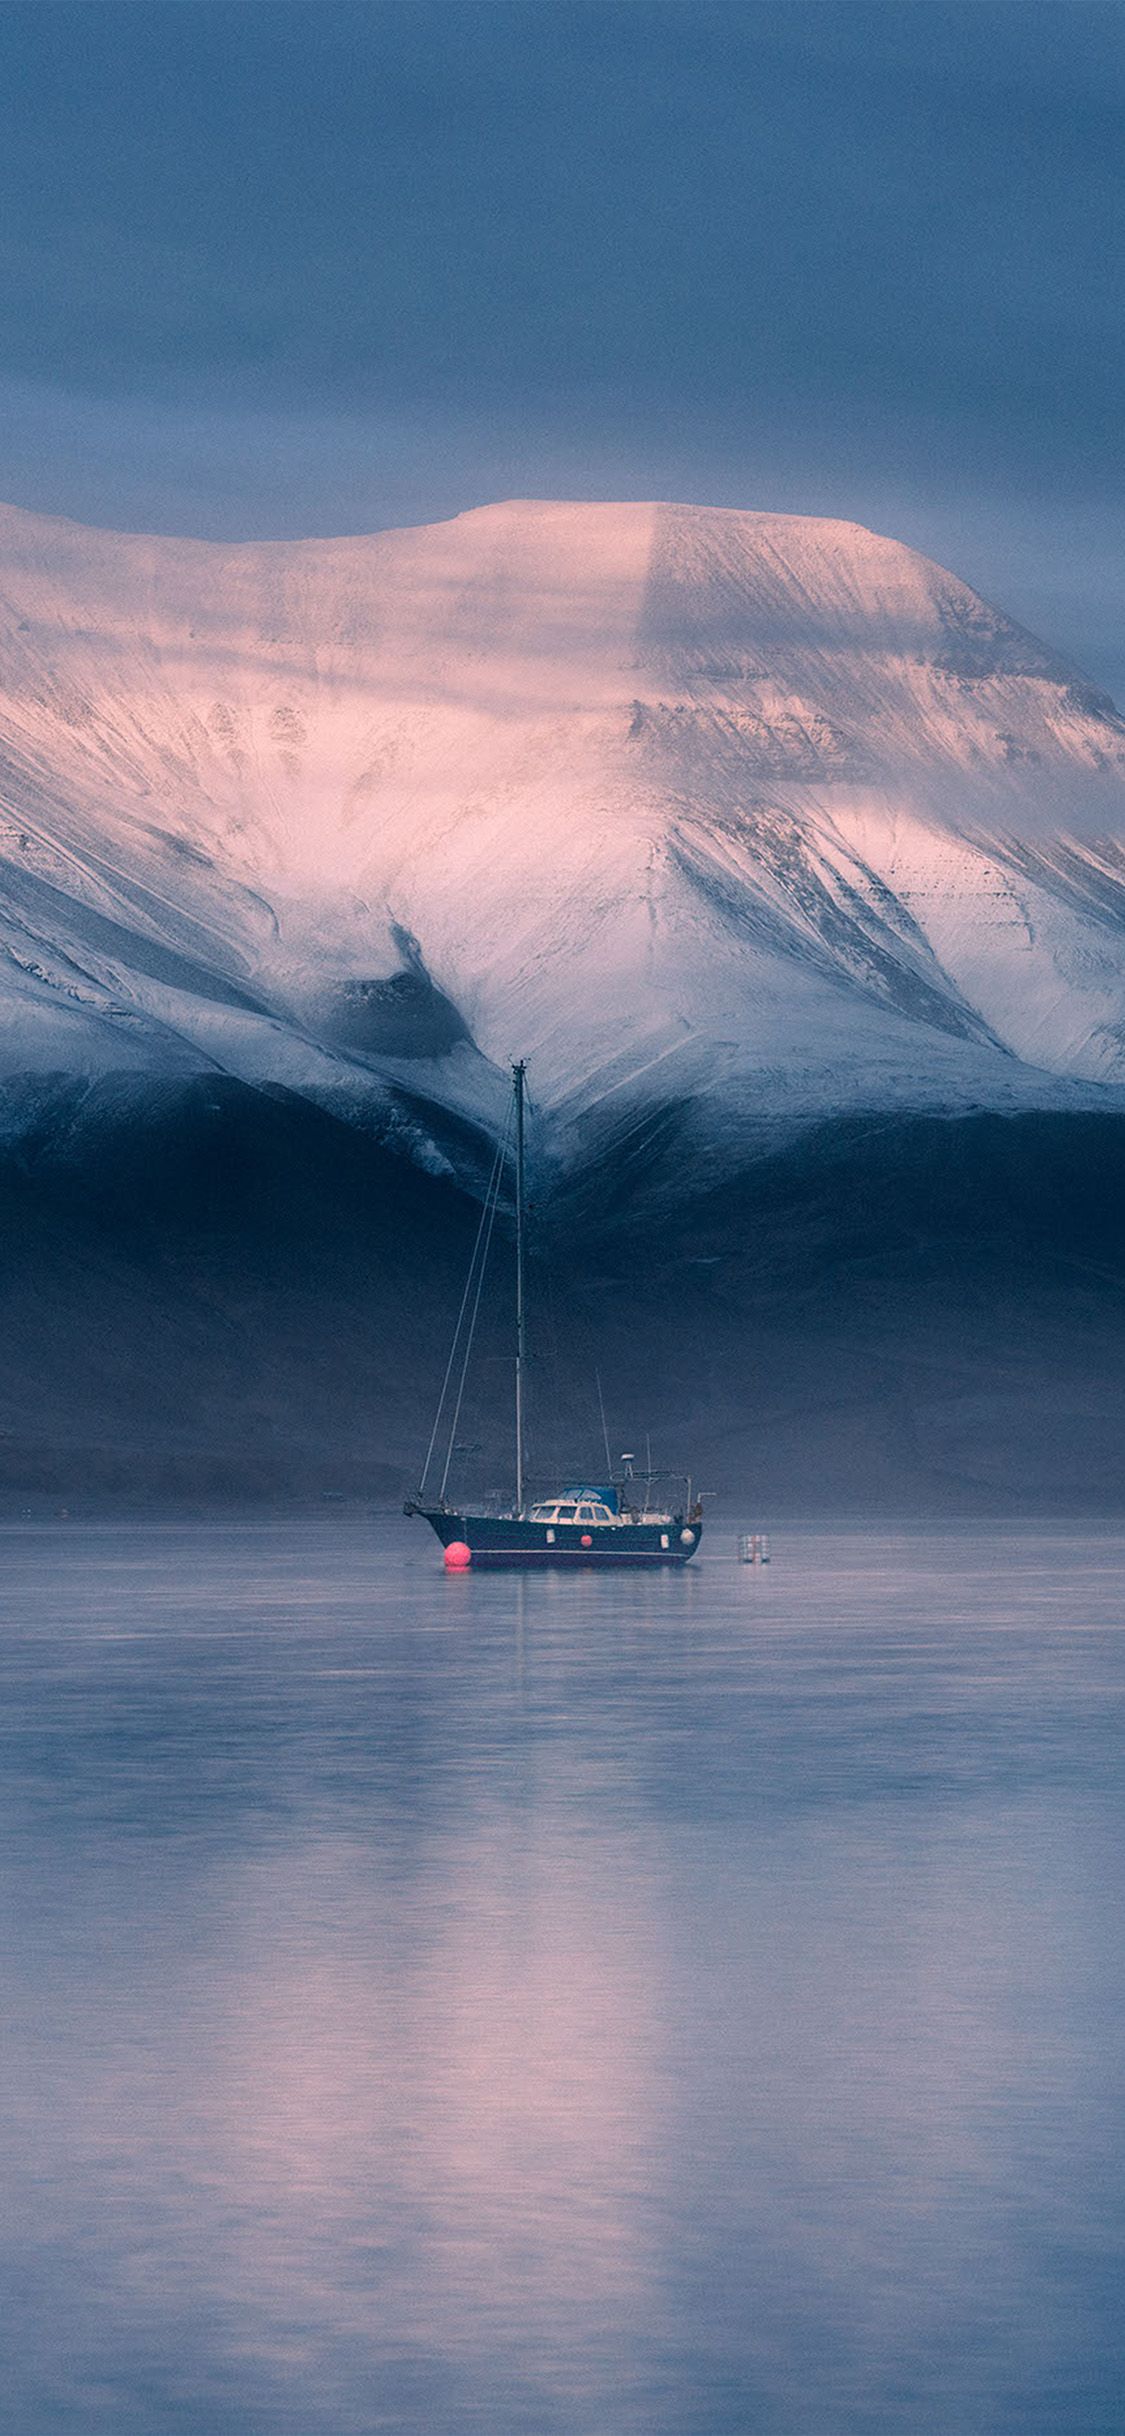 دانلود Background رویایی قایق روی آب با پس زمینه کوه سفید